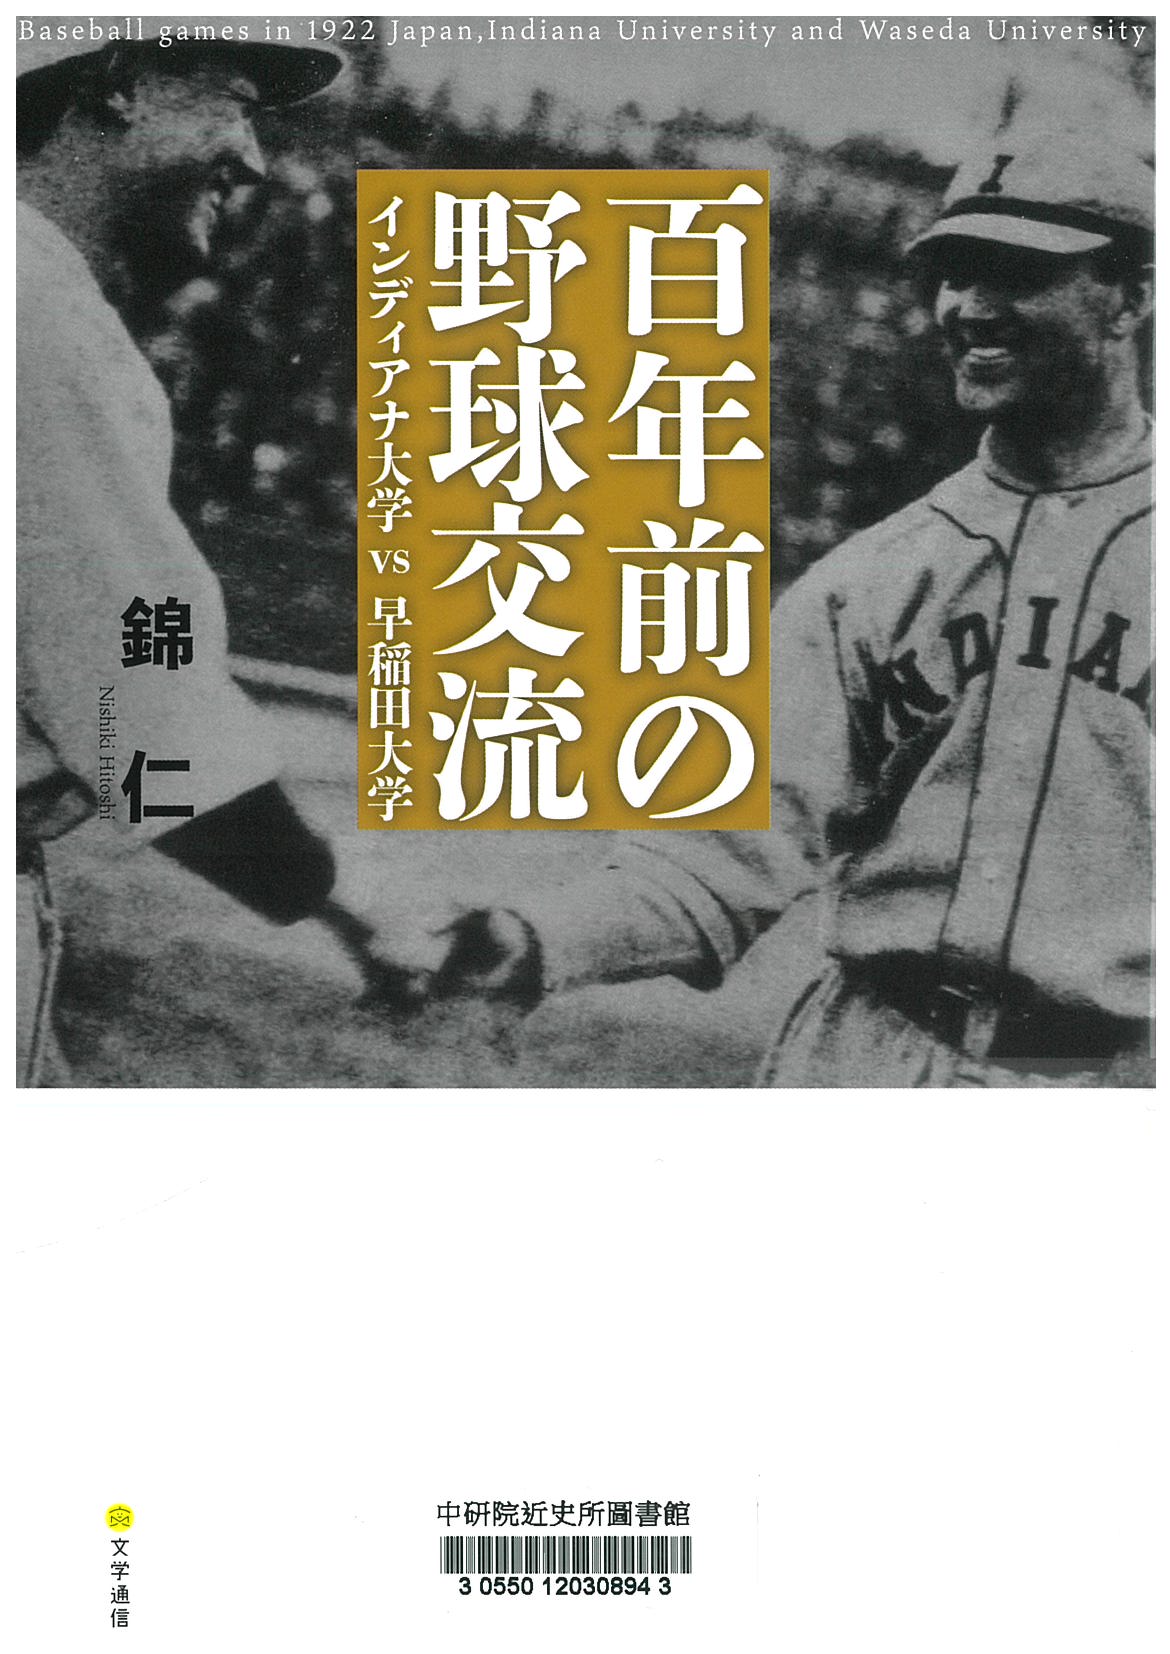 百年前の野球交流 : インディアナ大学vs早稲田大学 = Baseball games in 1922 Japan, Indiana university and Waseda university 